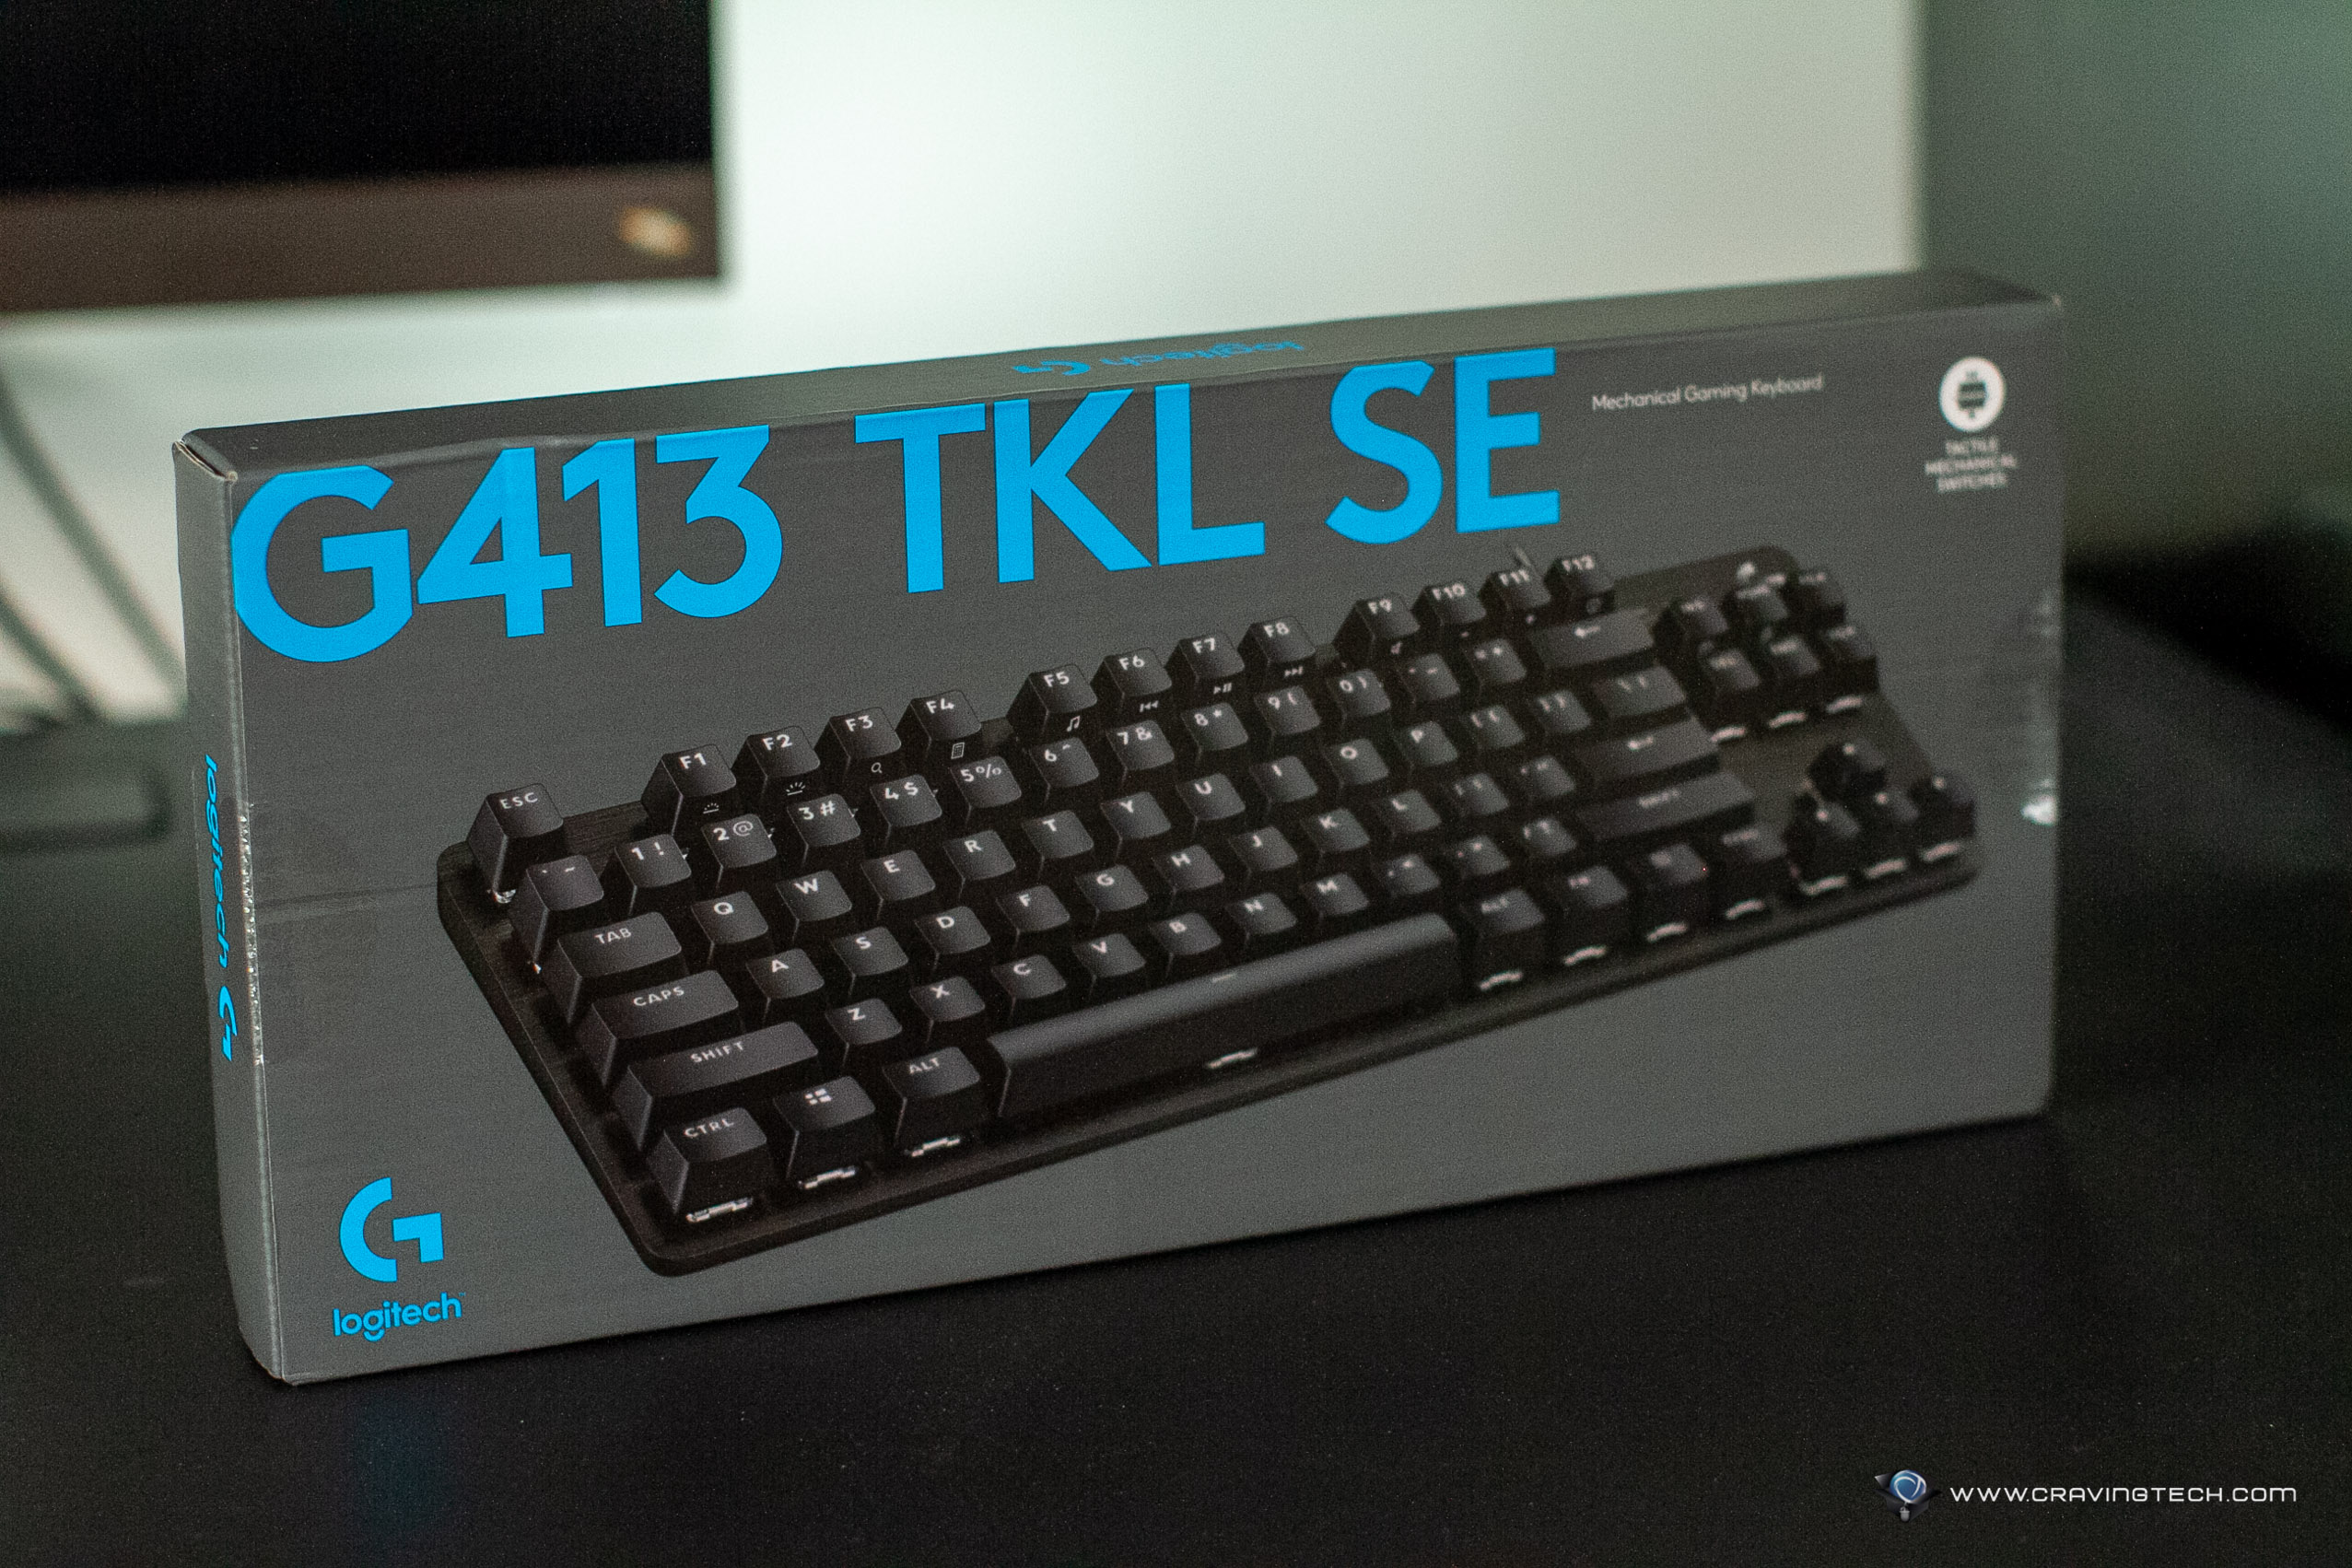 Logitech G413 TKL keyboard review: Don't buy it